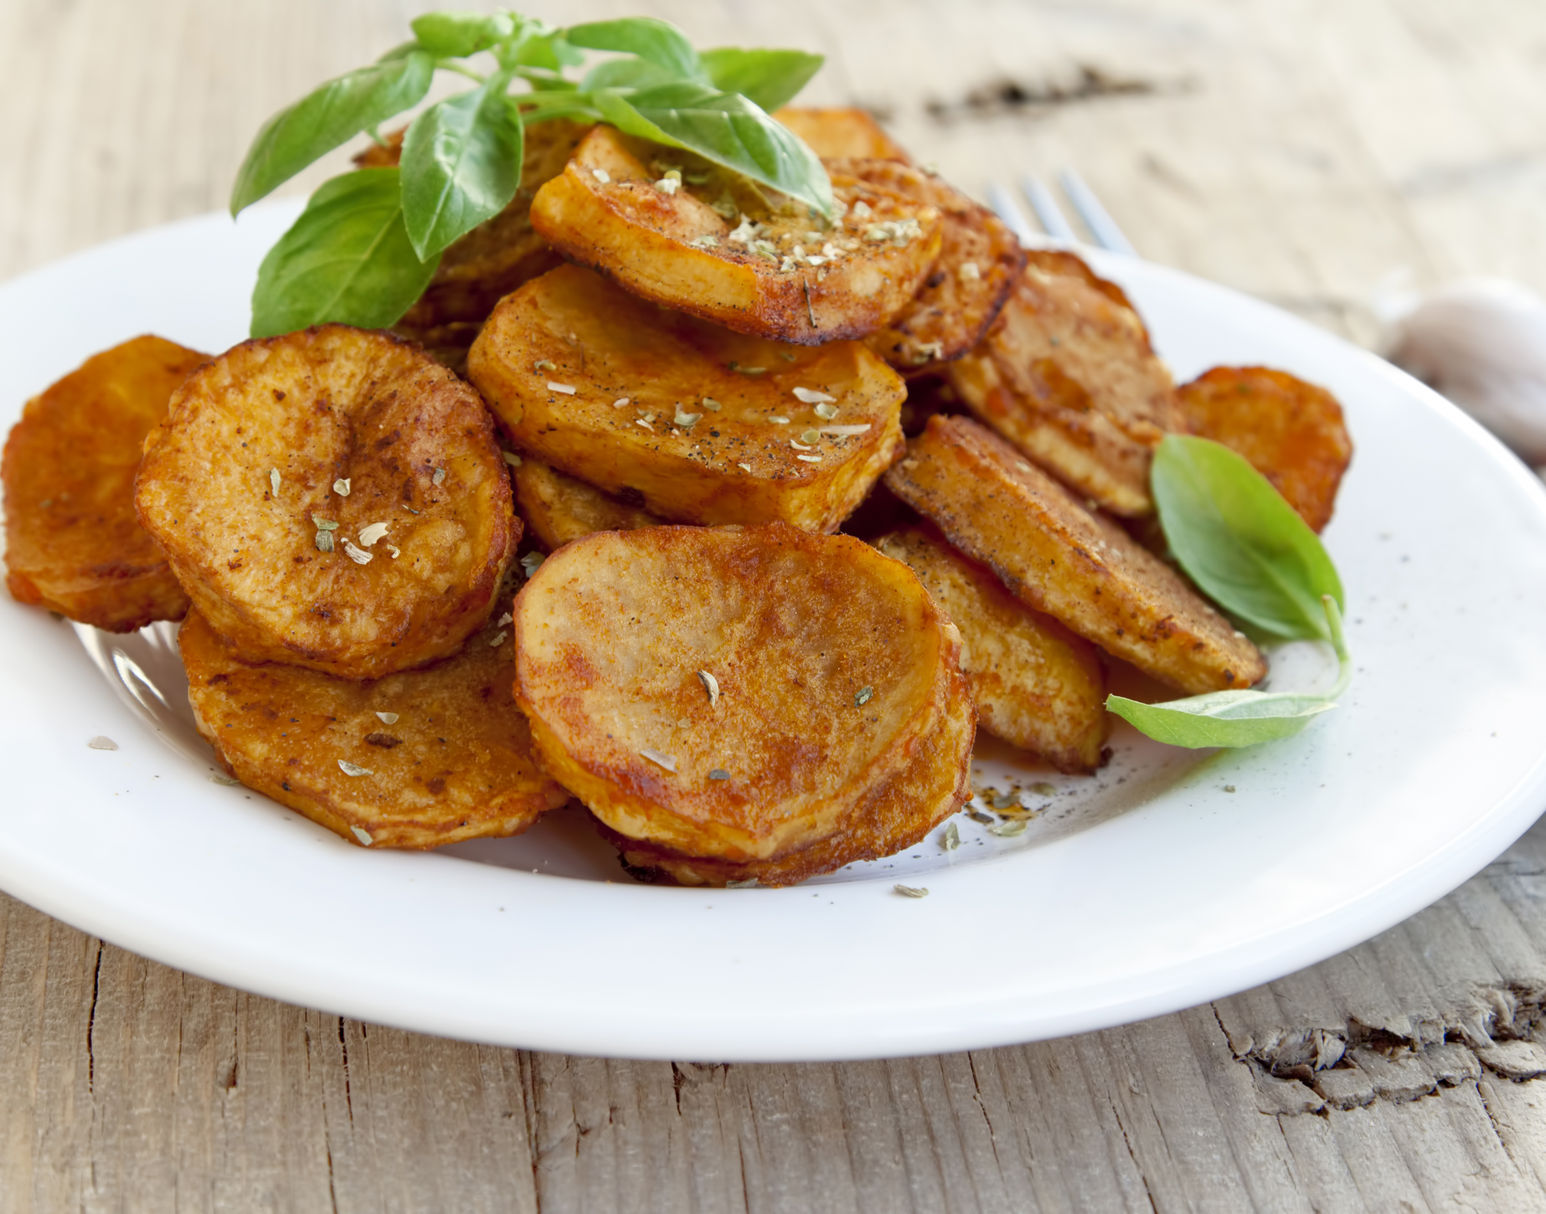 Chipsuri din cartofi la microunde sunt mai gustoase si mai sanatoase decat cele din comert